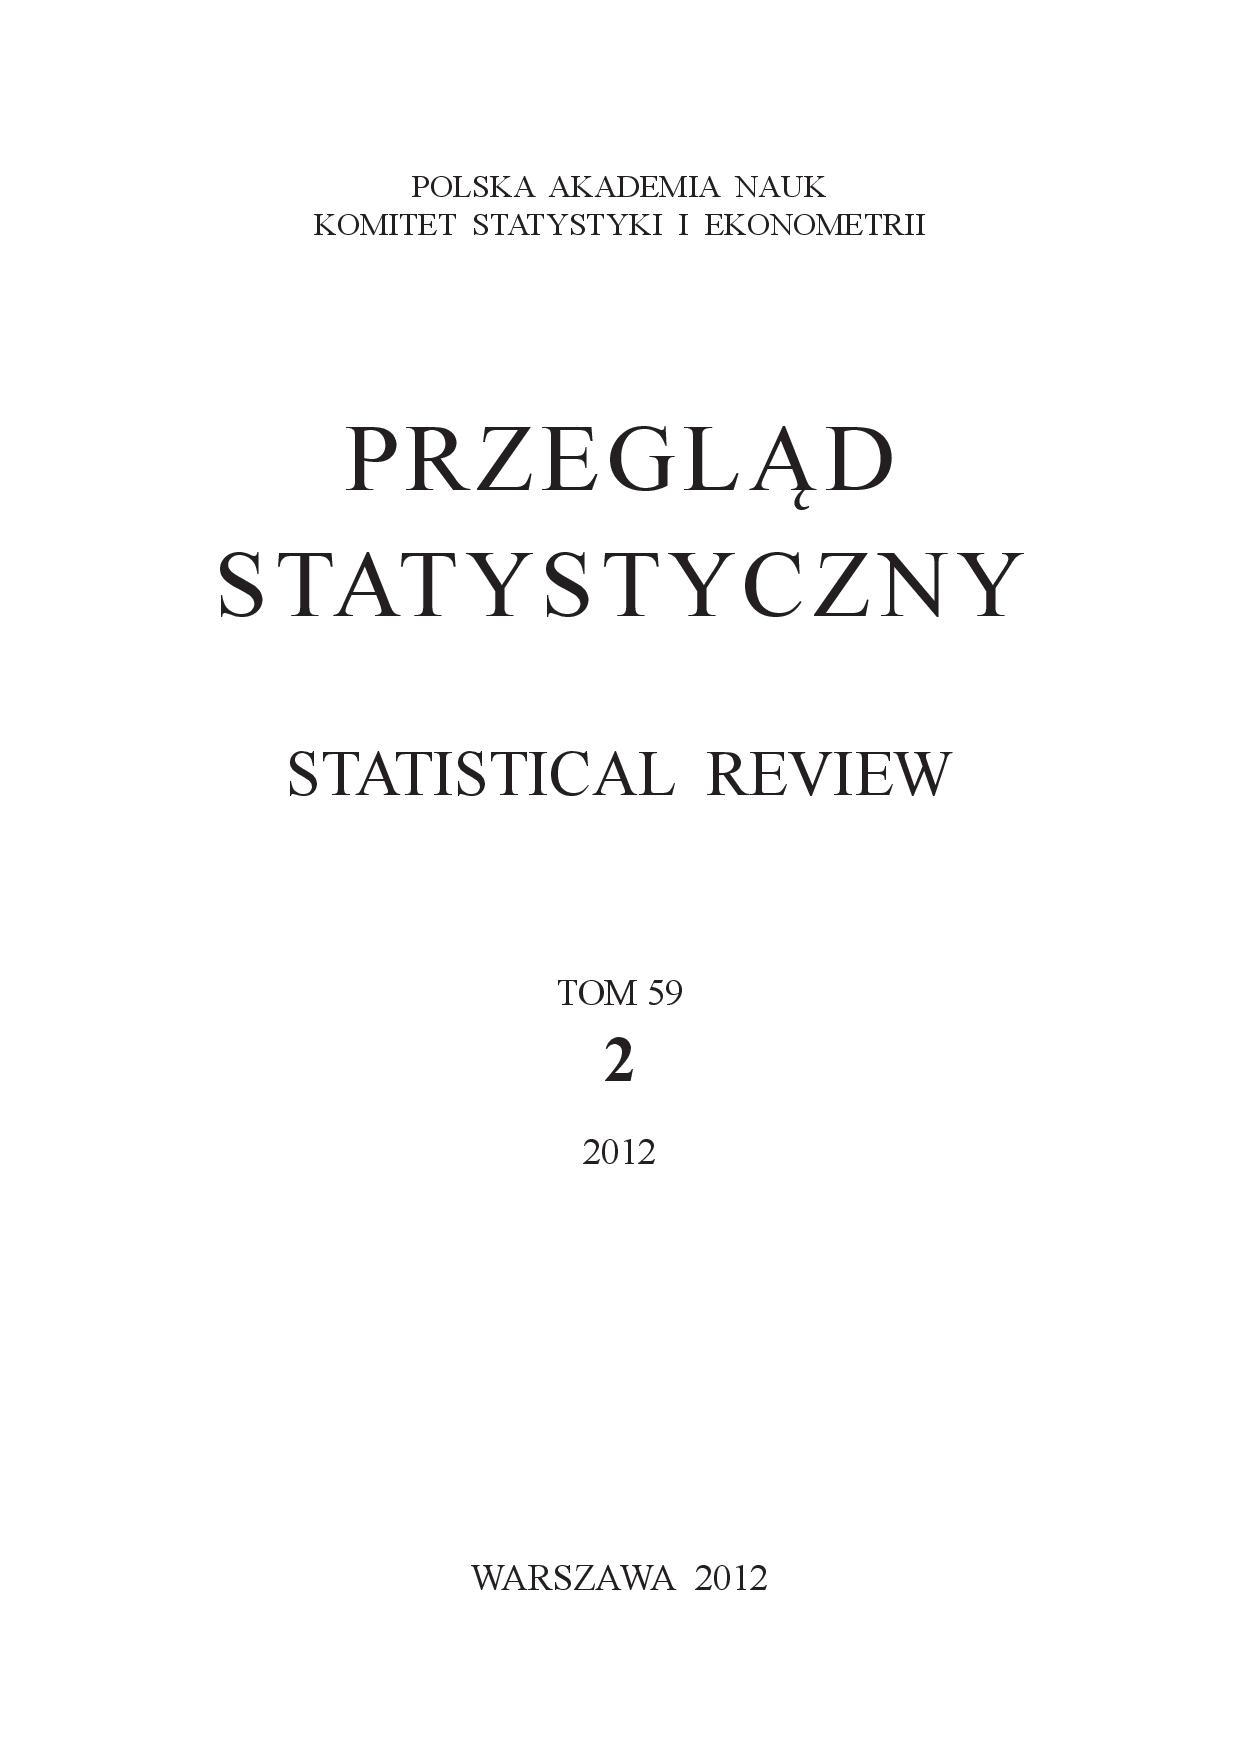 In Memory of Professor Kazimierz Zając Cover Image